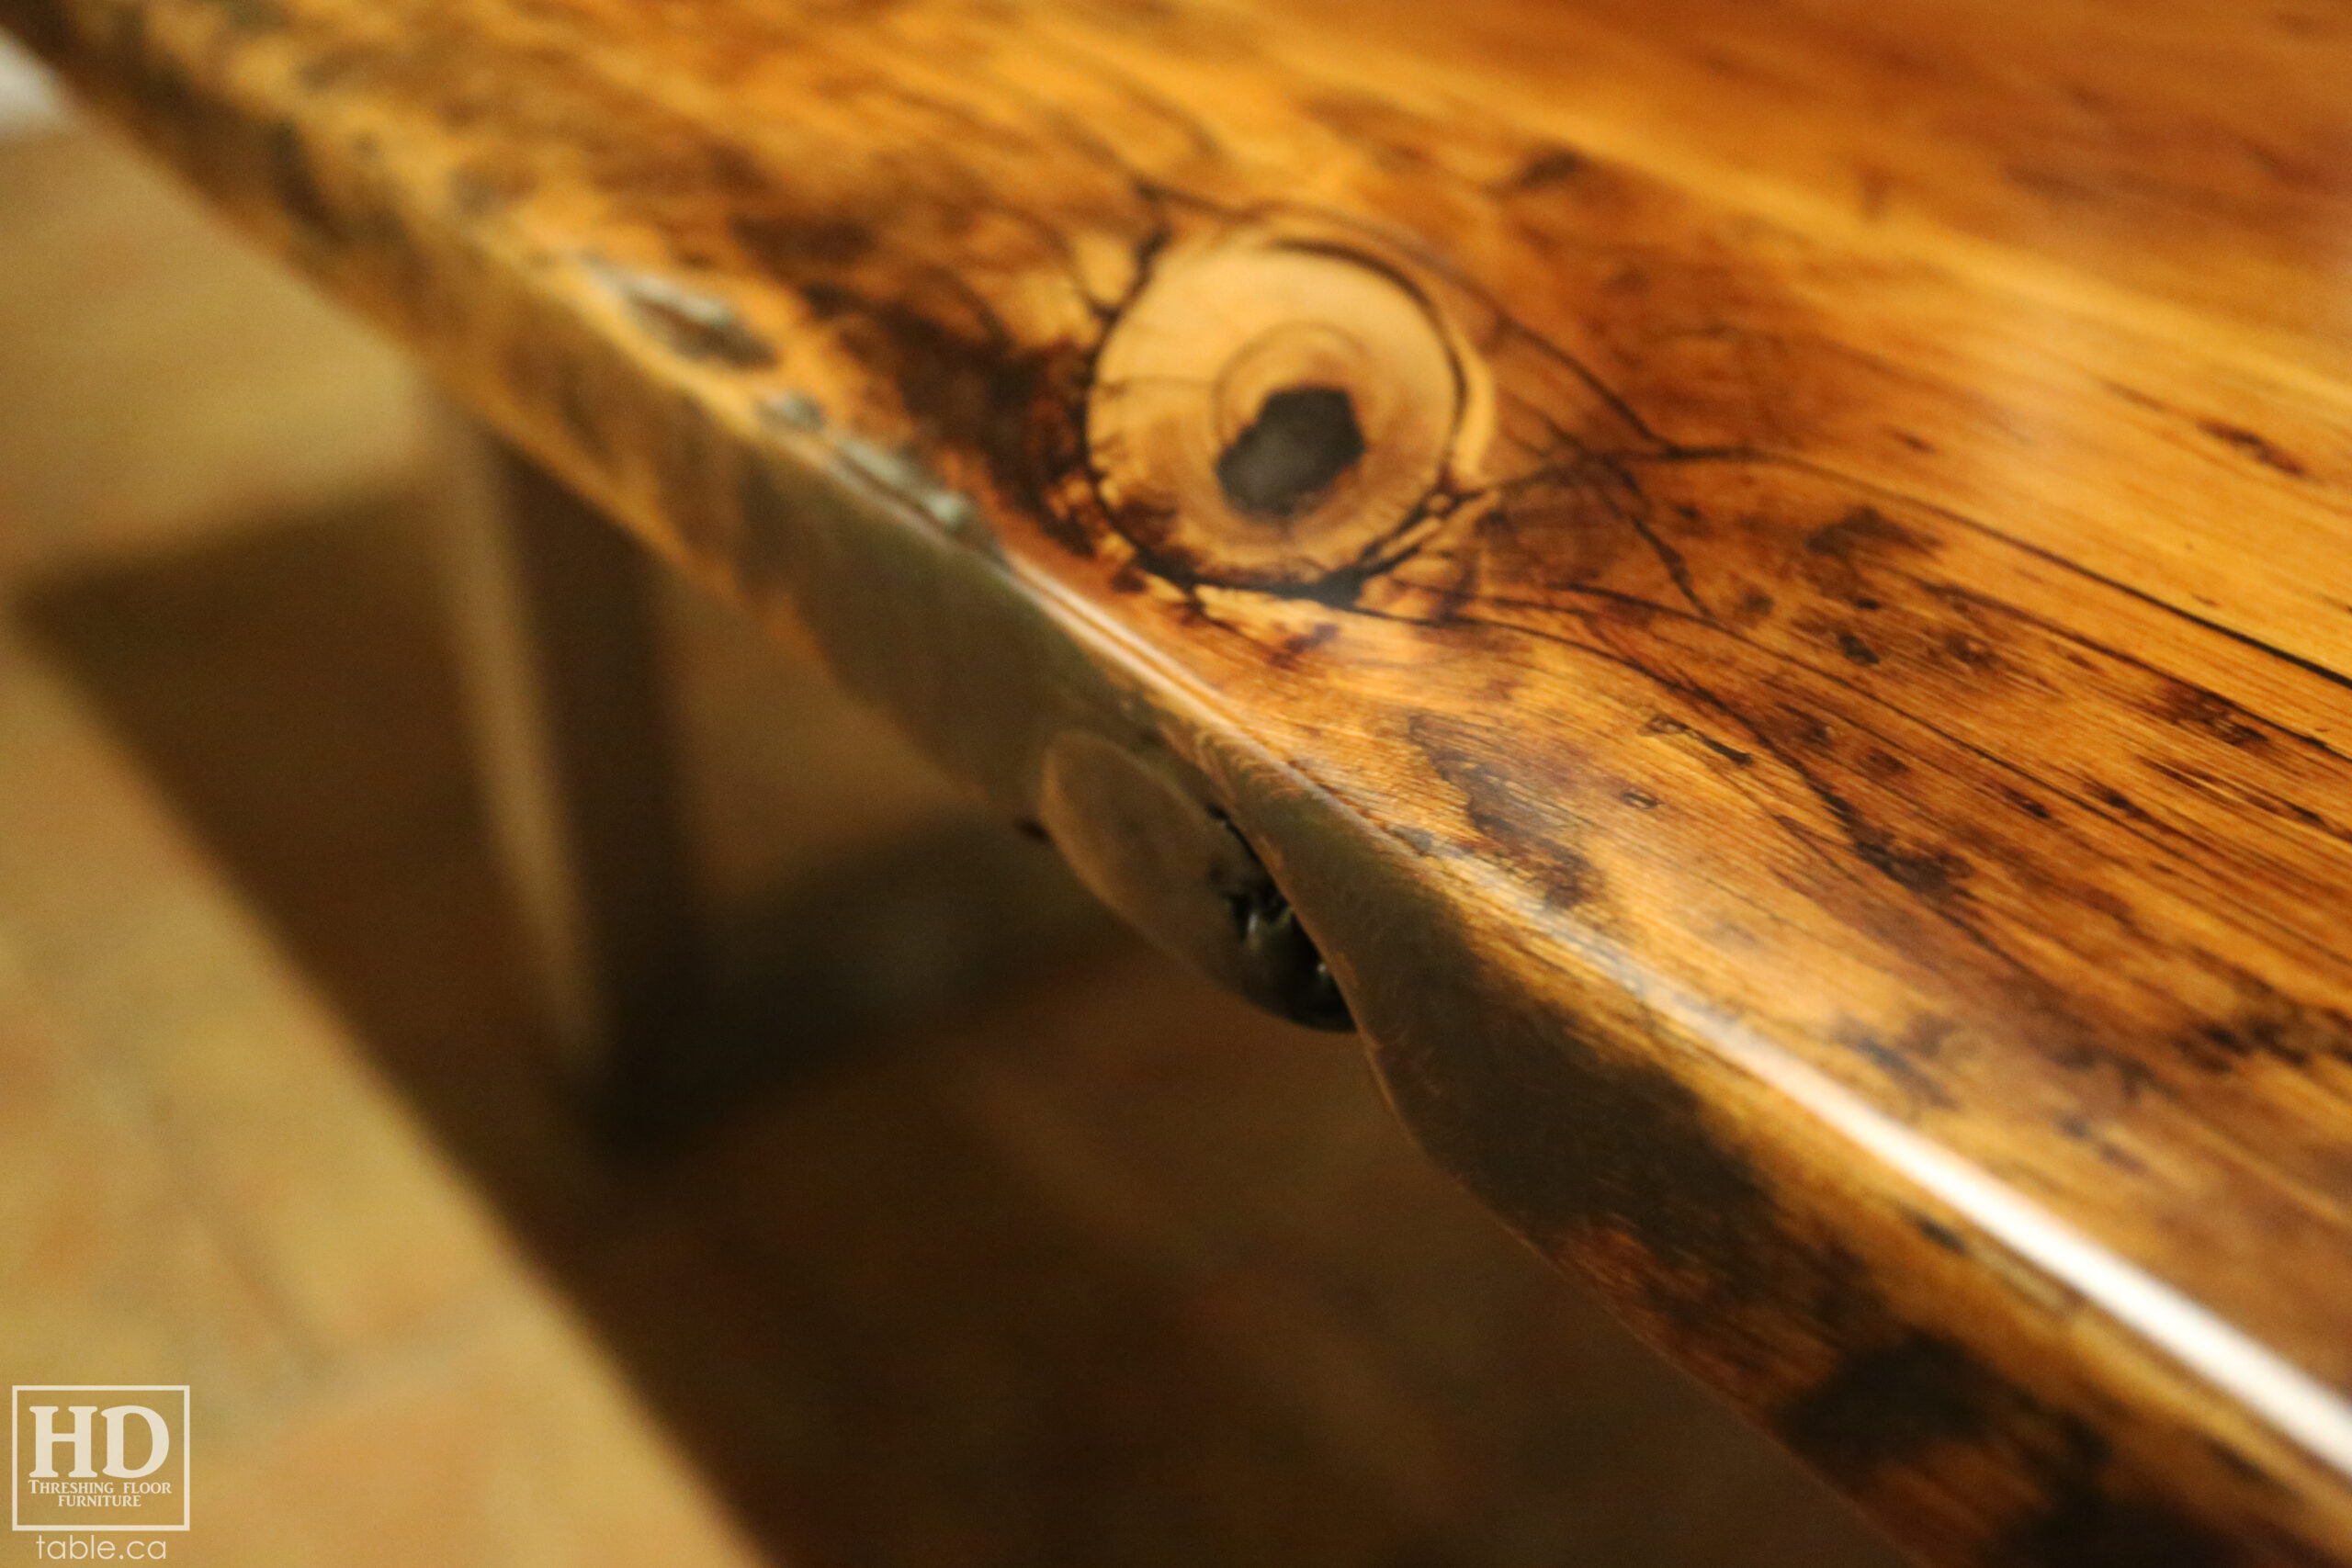 Reclaimed Wood Metal Base Table by HD Threshing Floor Furniture / www.table.ca